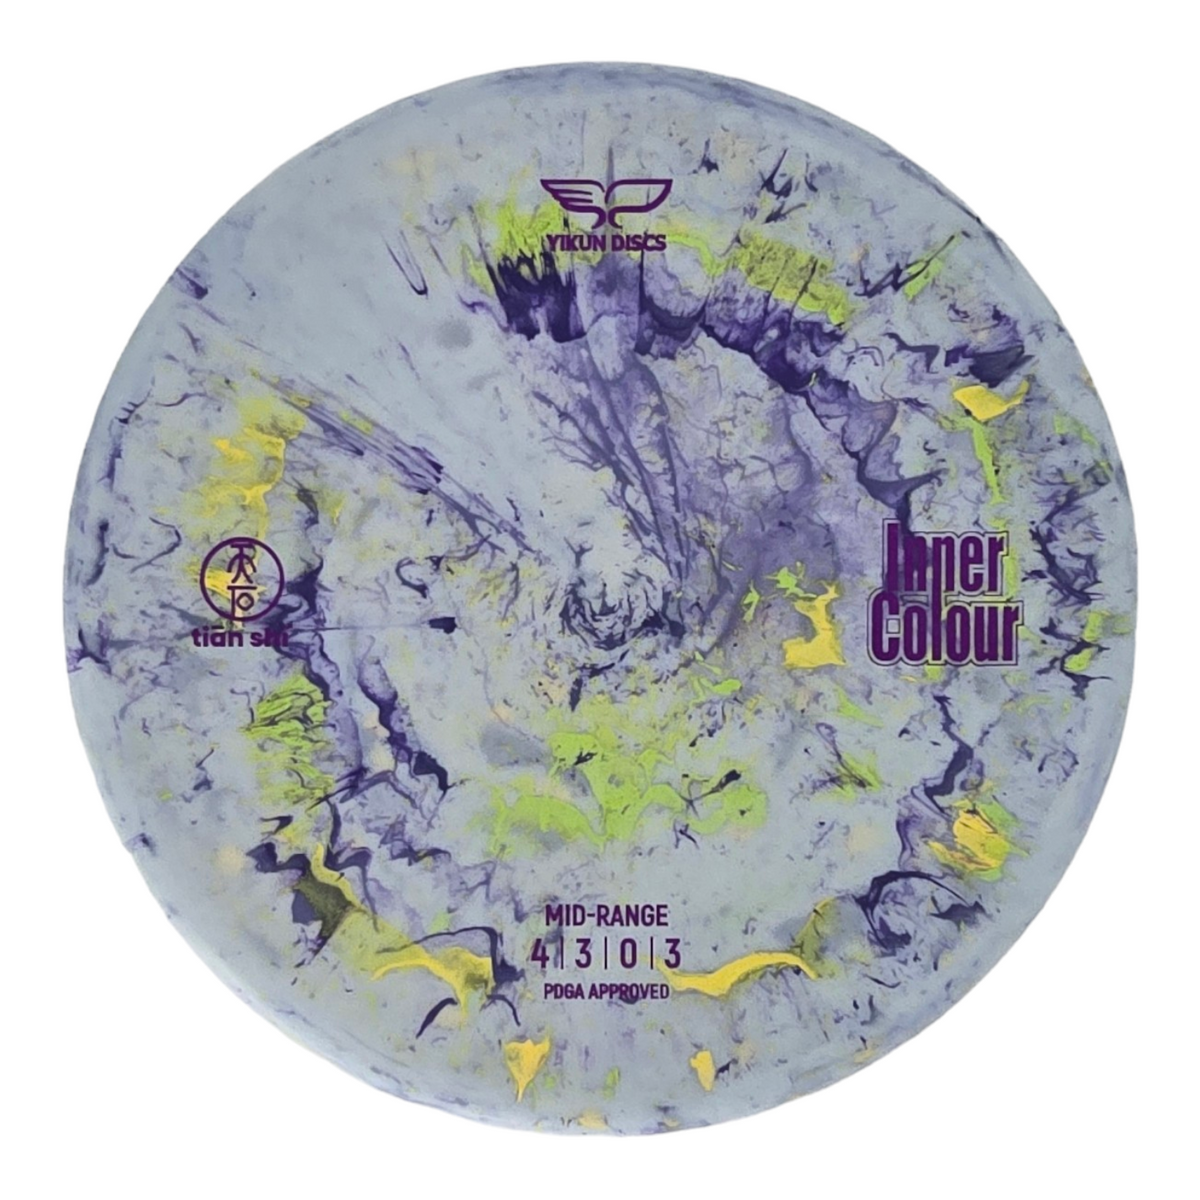 Yikun Discs Inner Colour Tian Shi